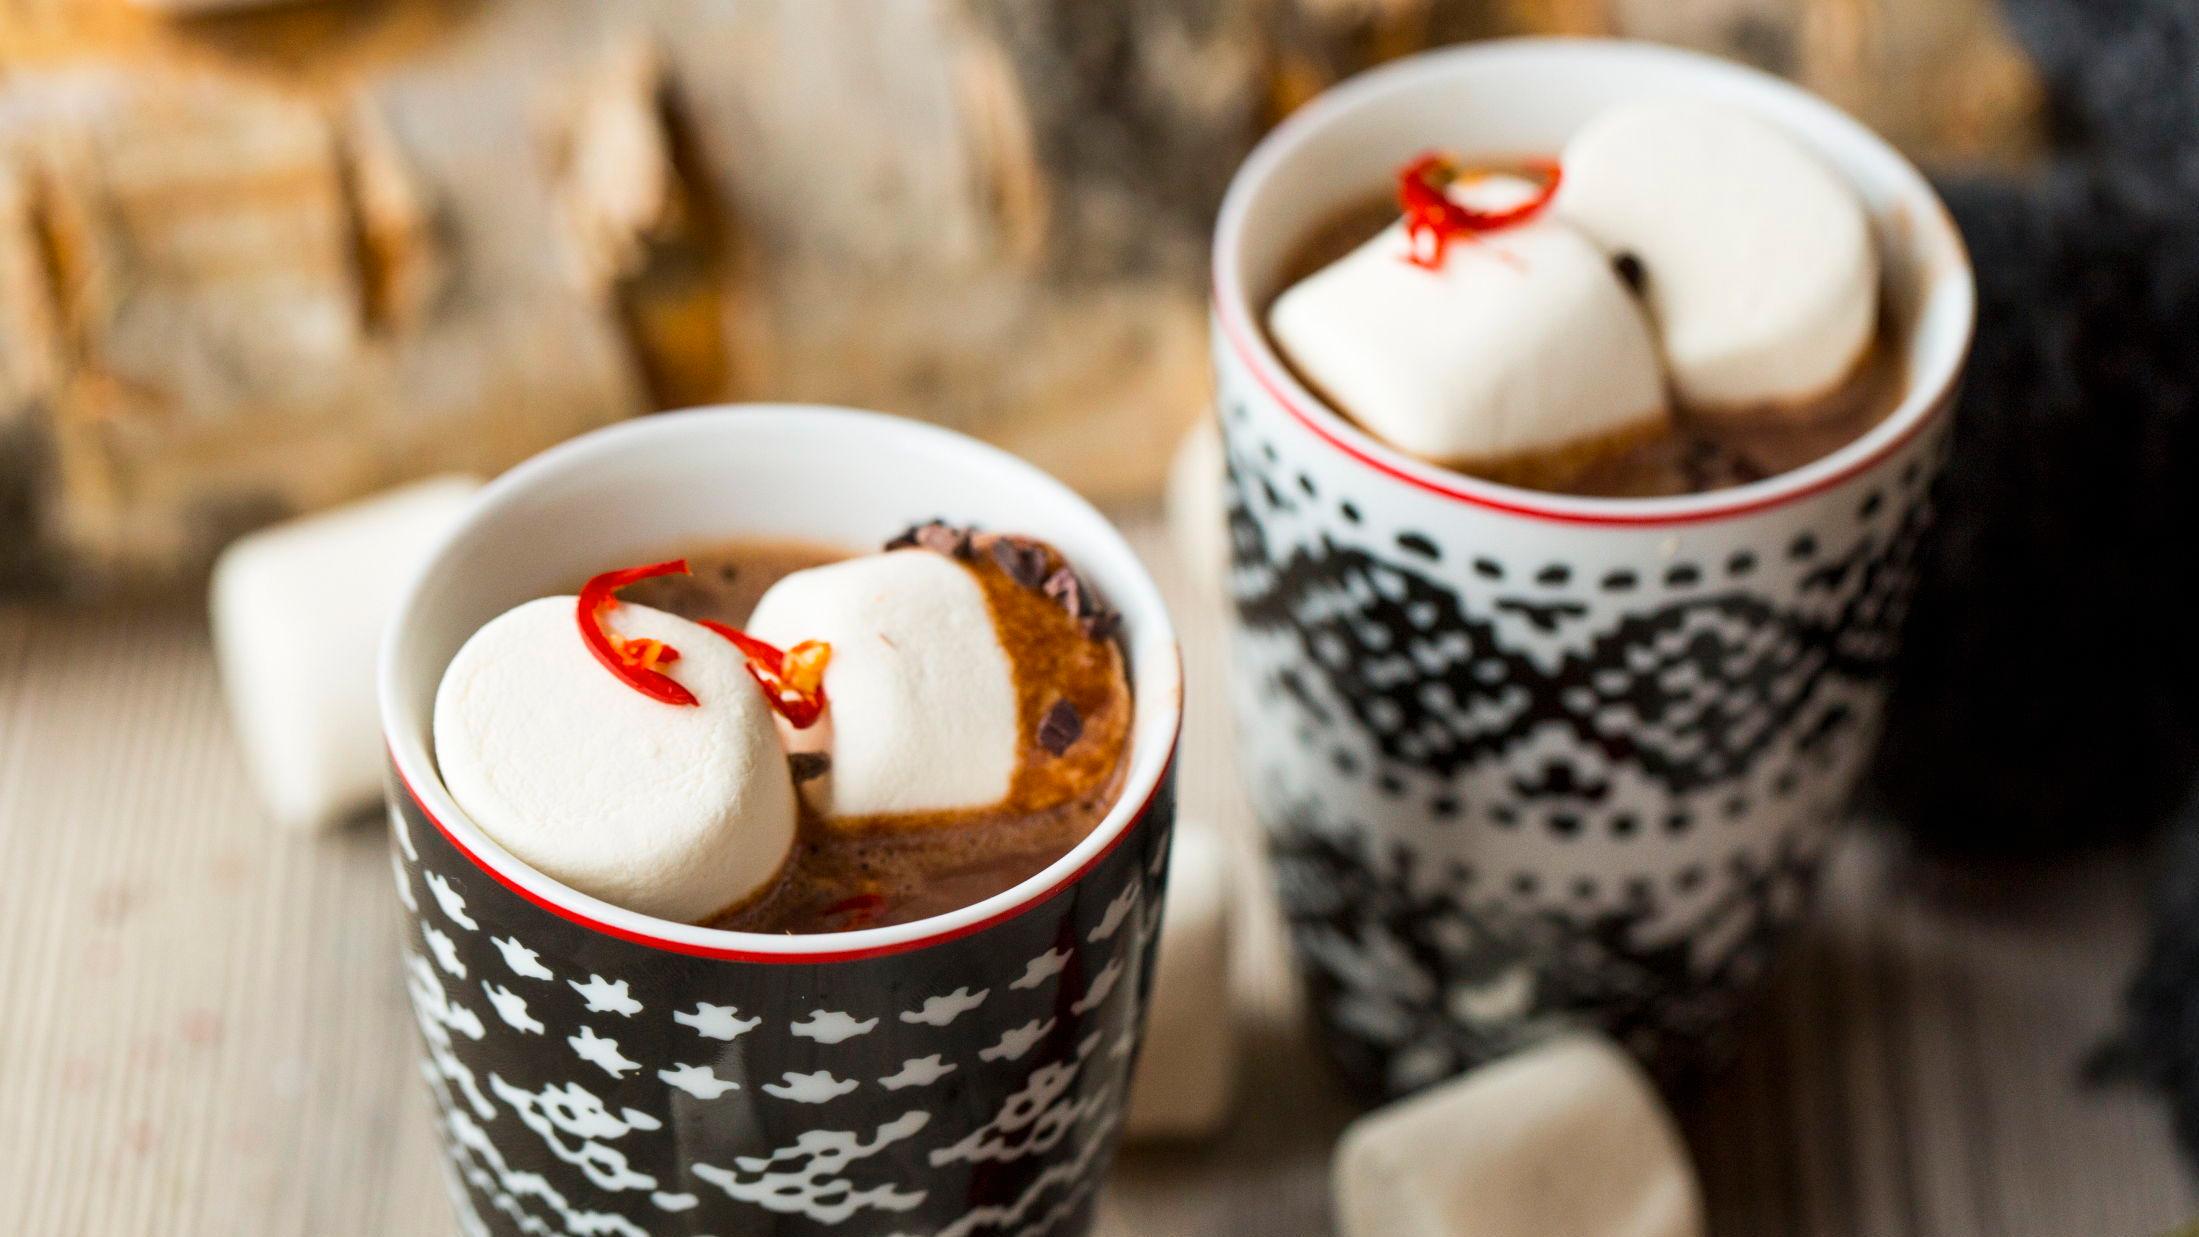 VINTERGODT: Varm sjokolade med marshmallows og chili piffer opp en kald vinterdag. Foto: Sara Johannessen/VG